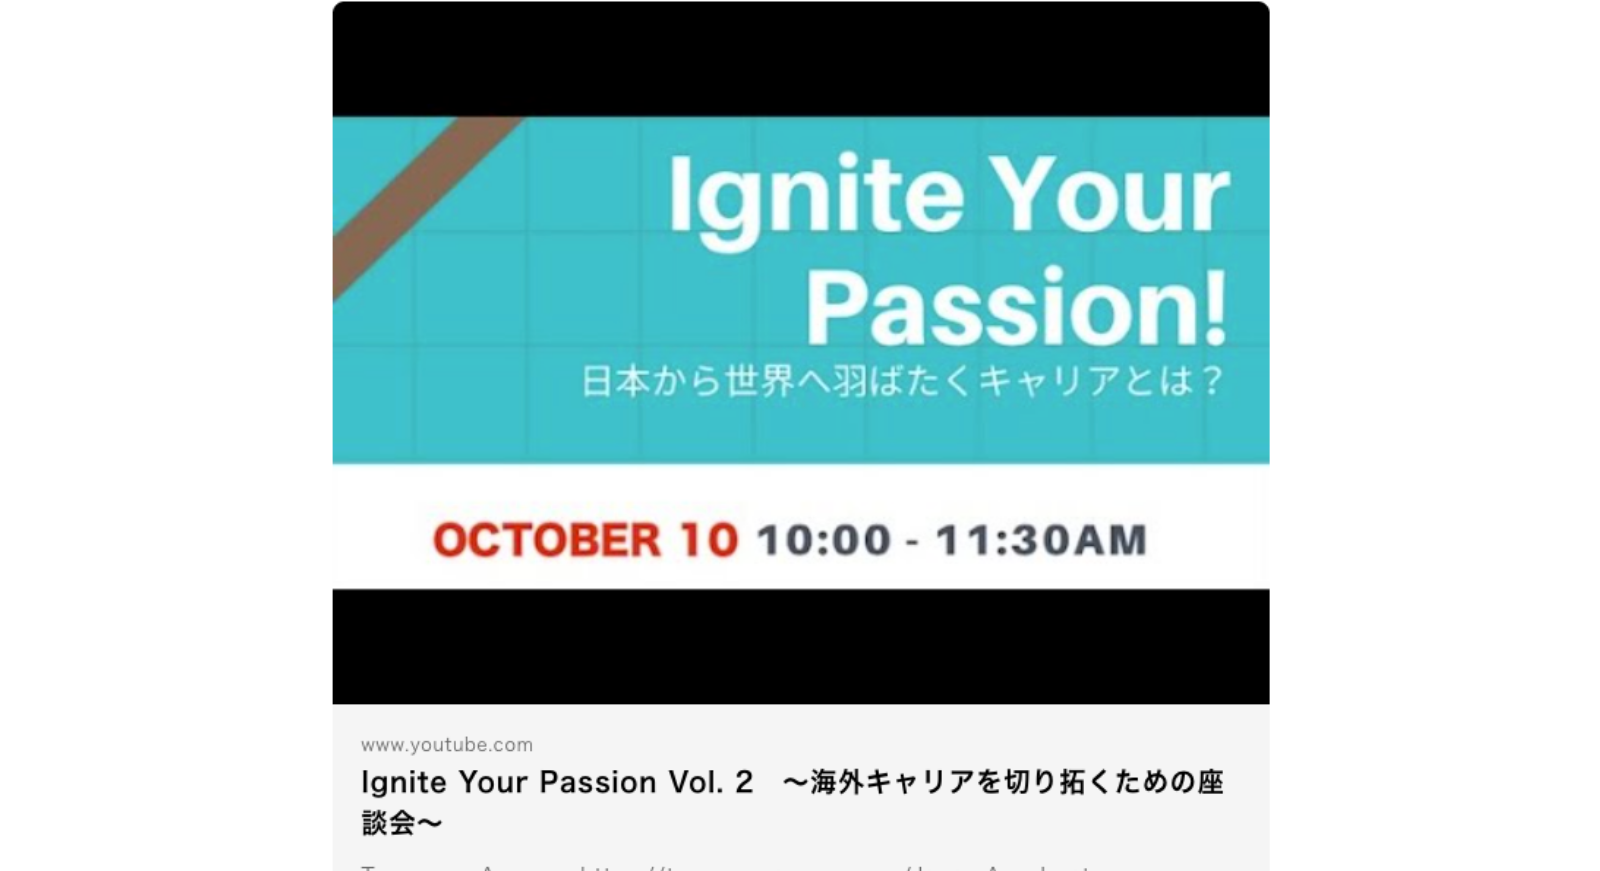 次世代のグローバル人材をエンパワーするプロジェクト「Ignite Your Passion!」